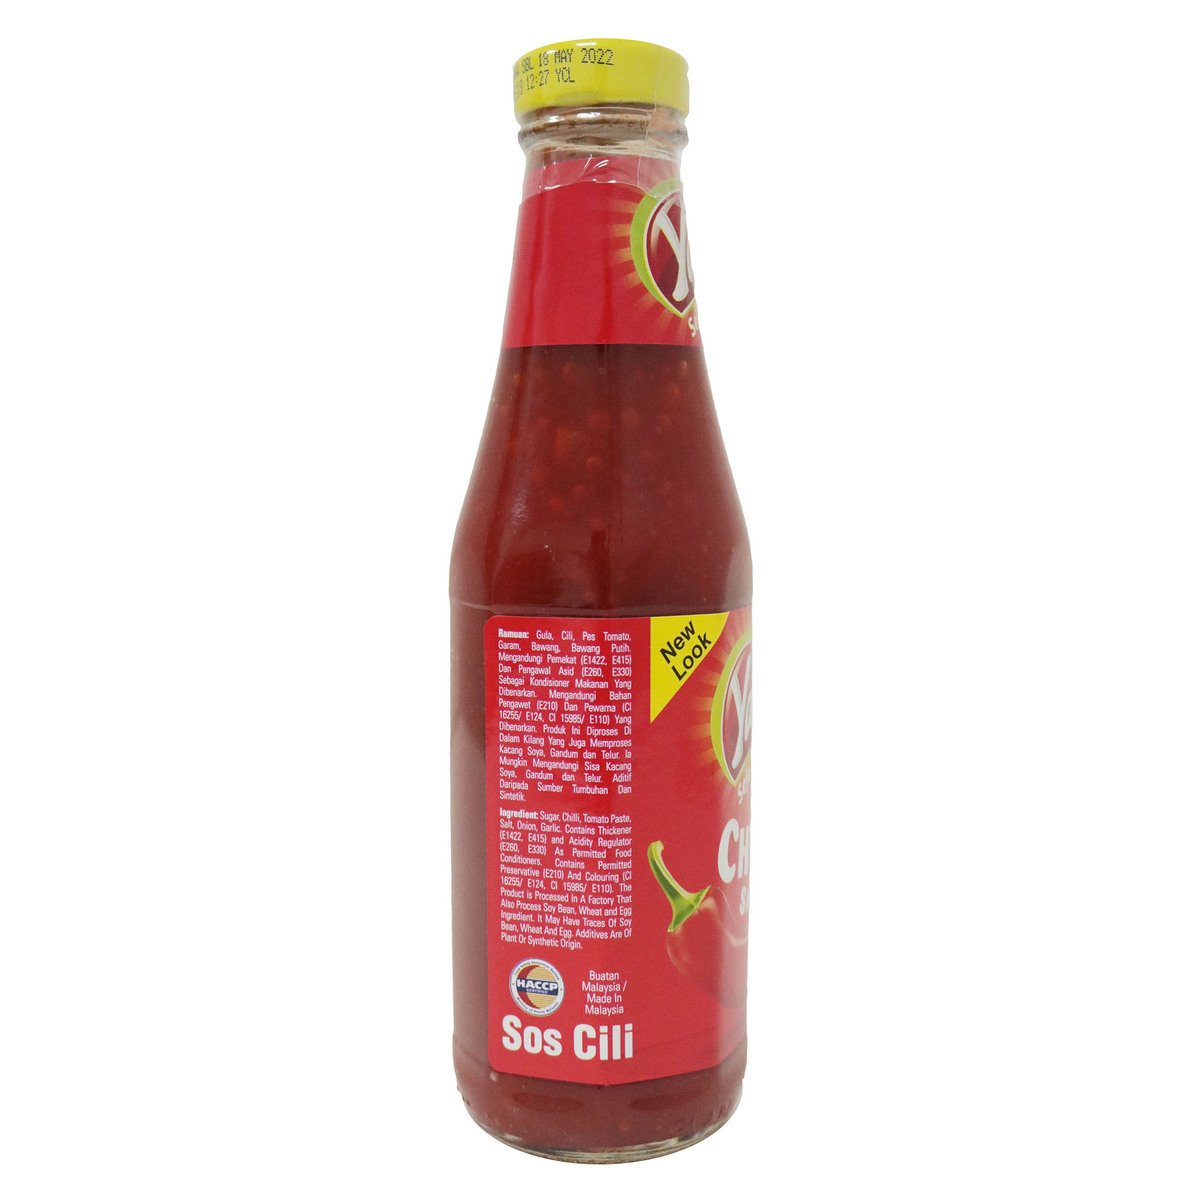 Yakin Chili Sauce 340g